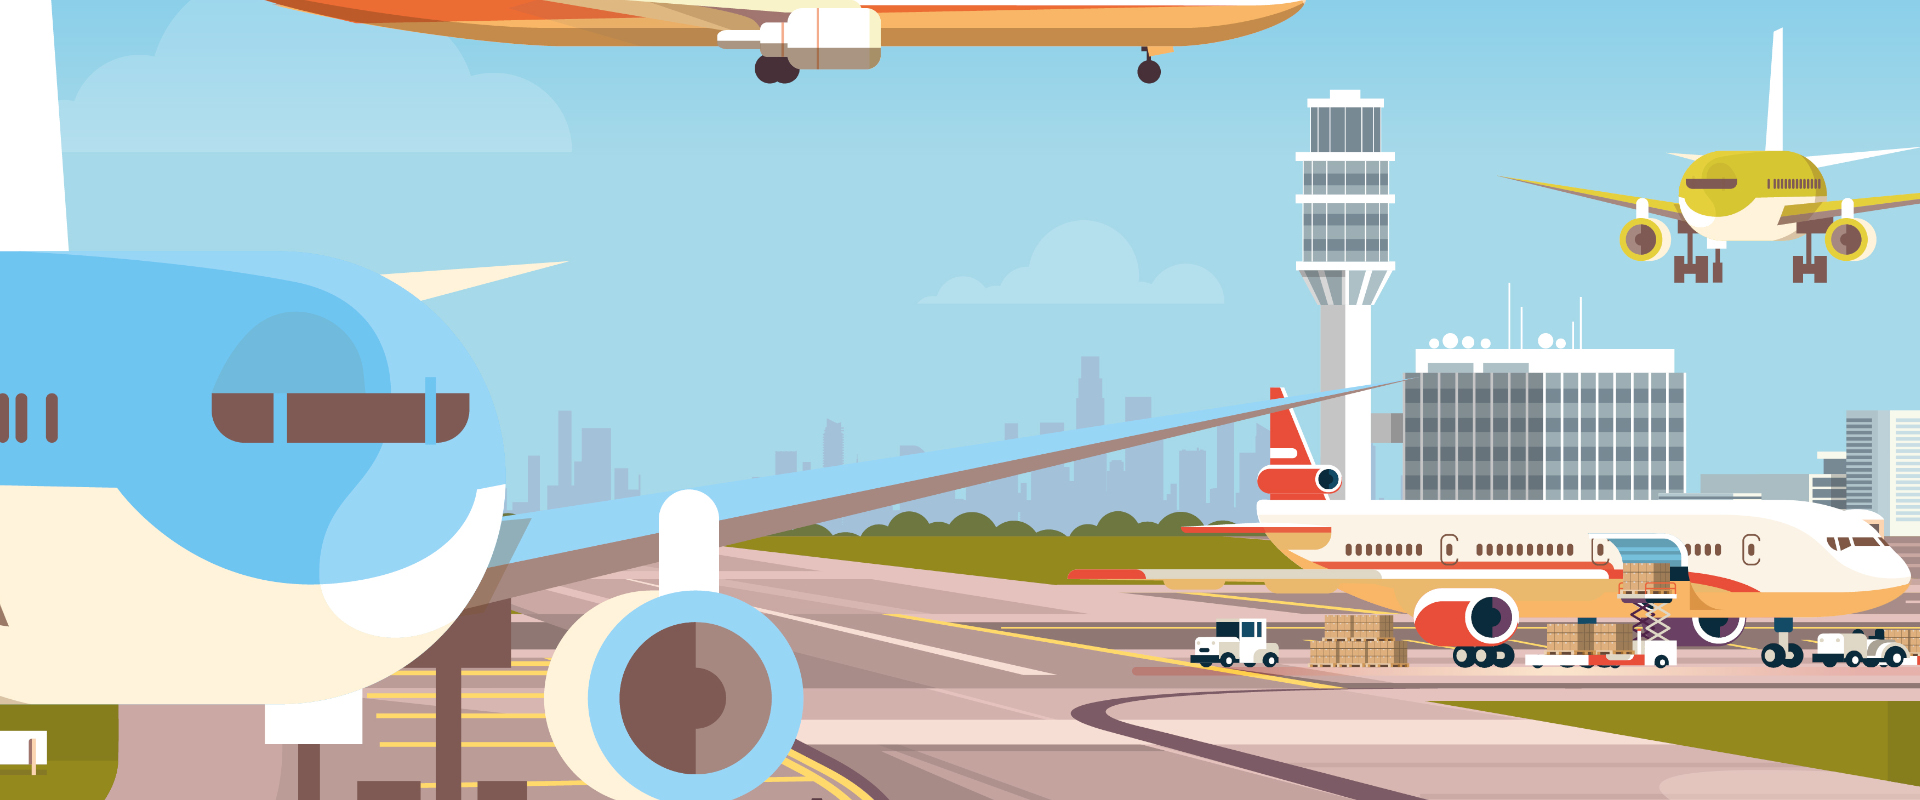 forex wanddesign in een reisthema met vliegtuigen